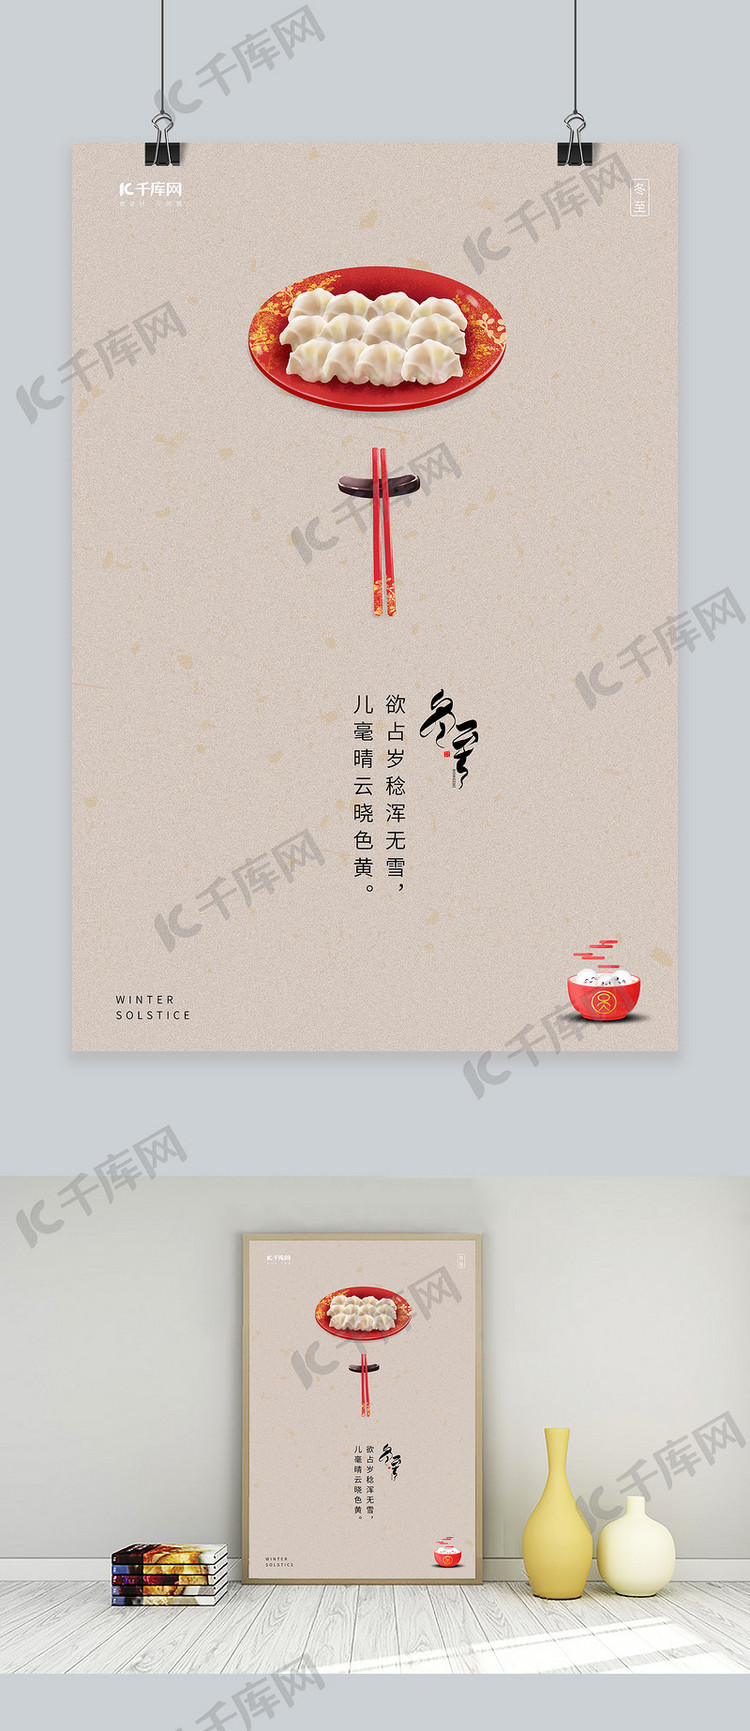 冬至水饺宣传传统节气海报